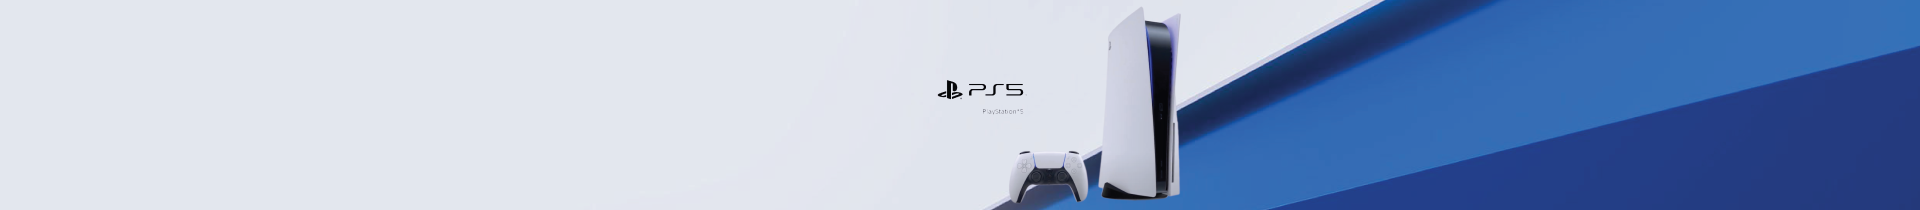 Acessórios Playstation 5 | PressStart.pt